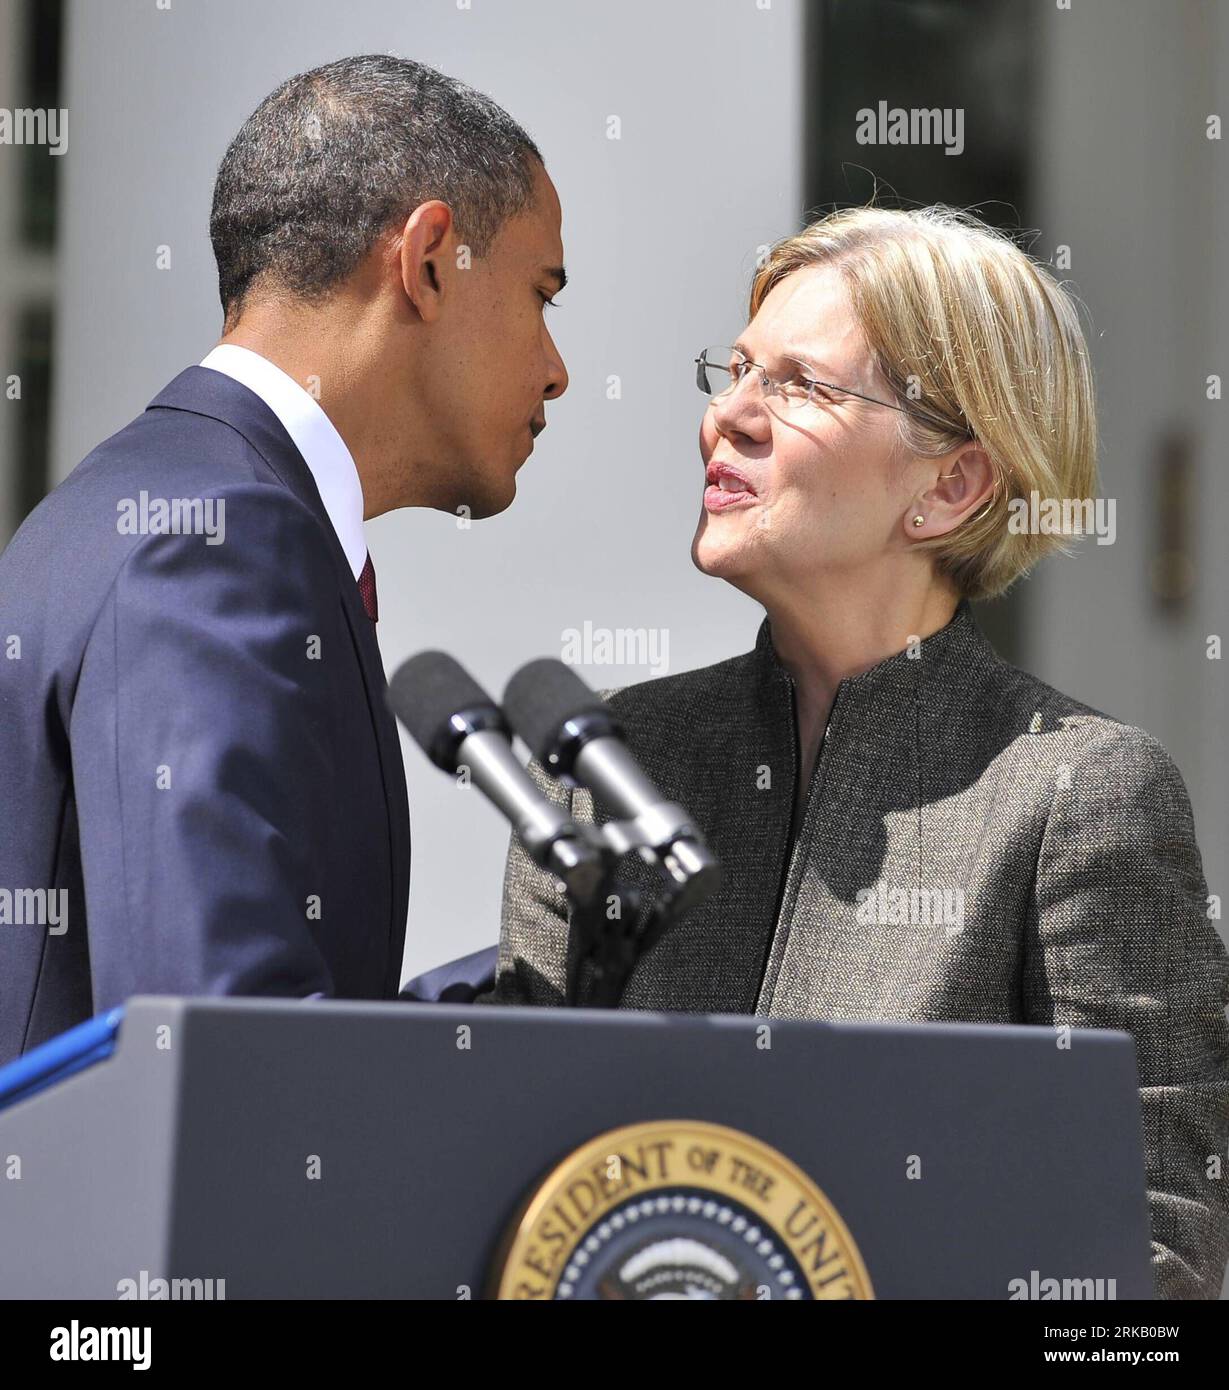 Bildnummer: 54439675 Datum: 17.09.2010 Copyright: Imago/XINHUA (100917) -- WASHINGTON, 17 de septiembre de 2010 (XINHUA) -- El presidente Obama besa a la defensora del consumidor Elizabeth Warren en el Jardín de las Rosas de la Casa Blanca en Washington D.C., capital de los Estados Unidos, 17 de septiembre de 2010. Obama anunció el viernes el nombramiento de Elizabeth Warren para servir como asistente del Presidente y asesora especial del Secretario del Tesoro en la Oficina de Protección Financiera del Consumidor. (Xinhua/Zhang Jun) EEUU-WASHINGTON-OBAMA-ECONOMÍA-WARREN PUBLICATIONxNOTxINxCHN POLITIK USA kbdig xmk 2010 cuadrante Foto de stock